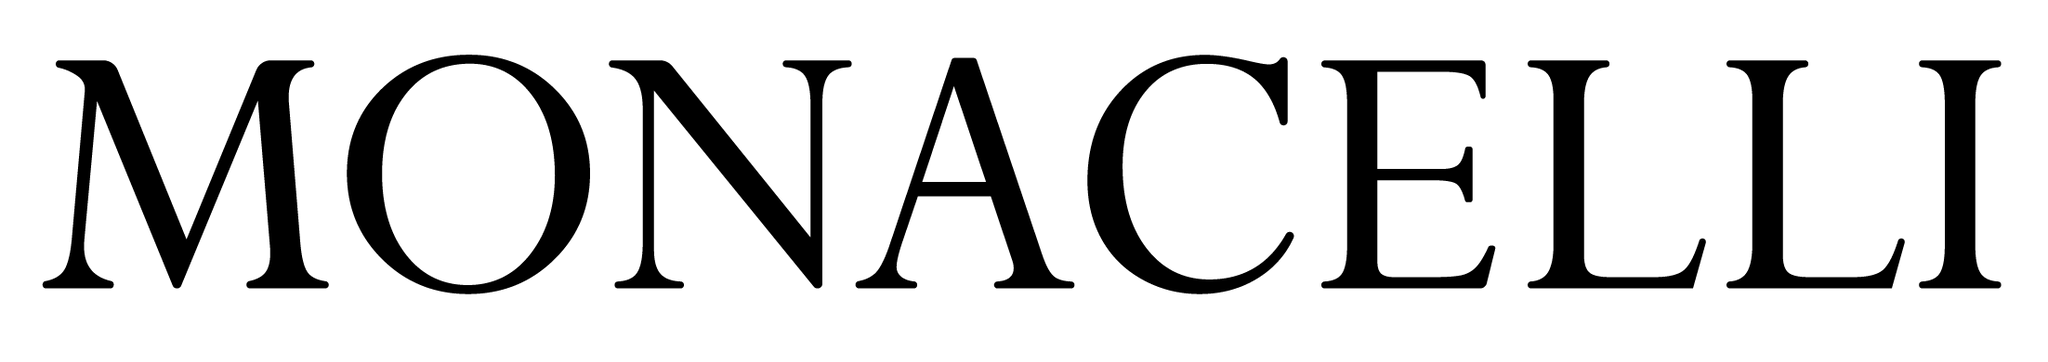 Monacelli press logo